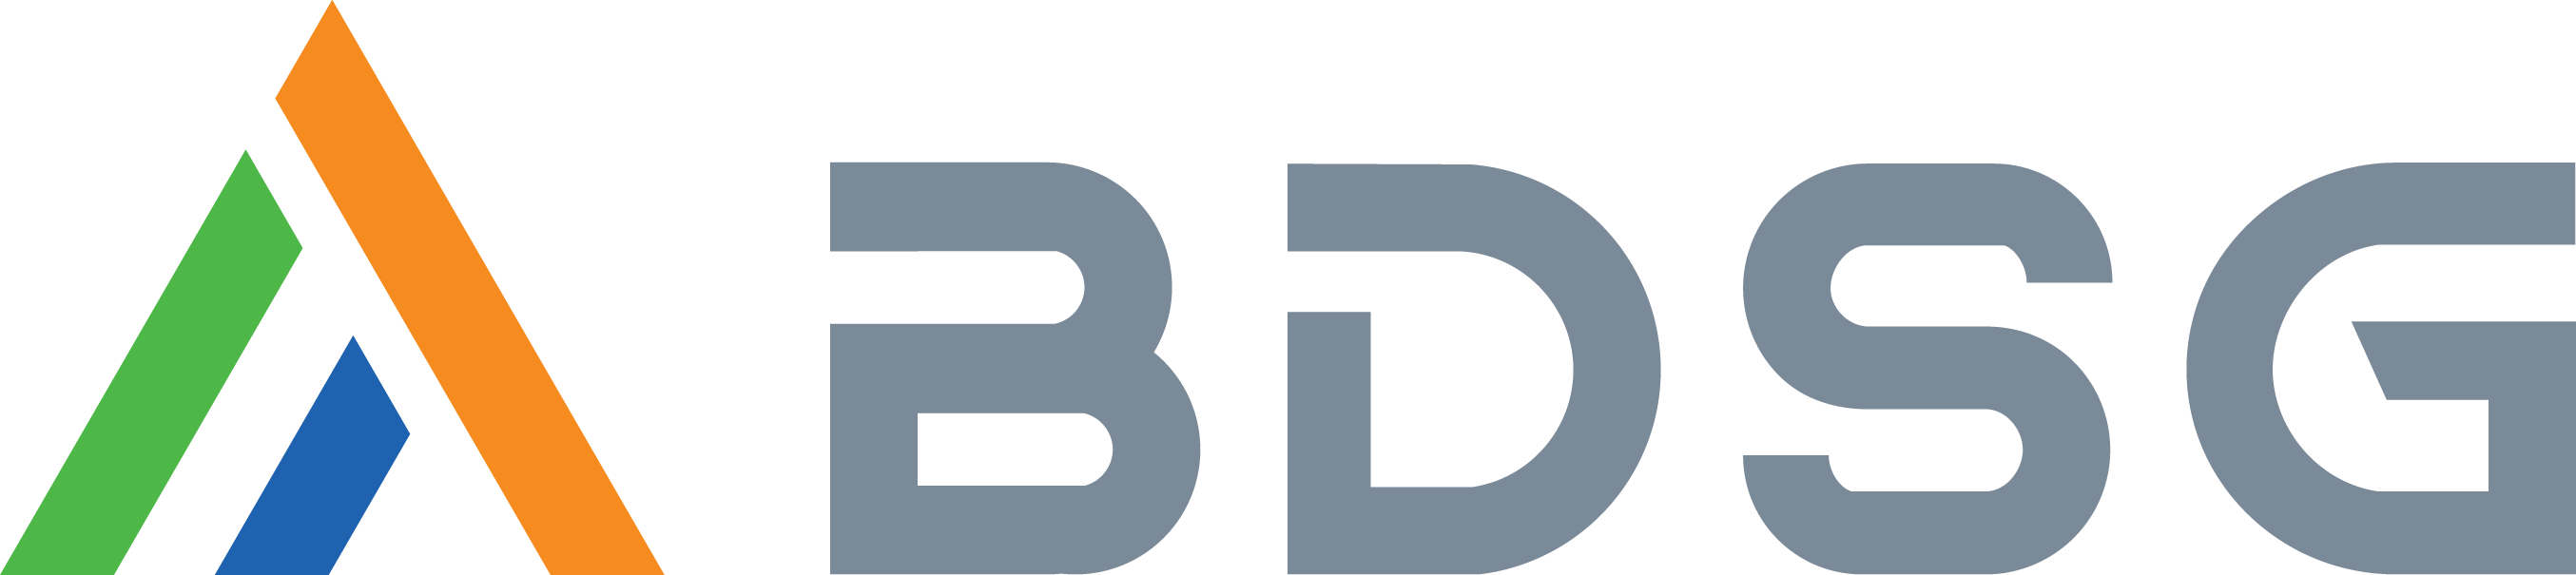 Digital partner network under BDSG Digital Logo